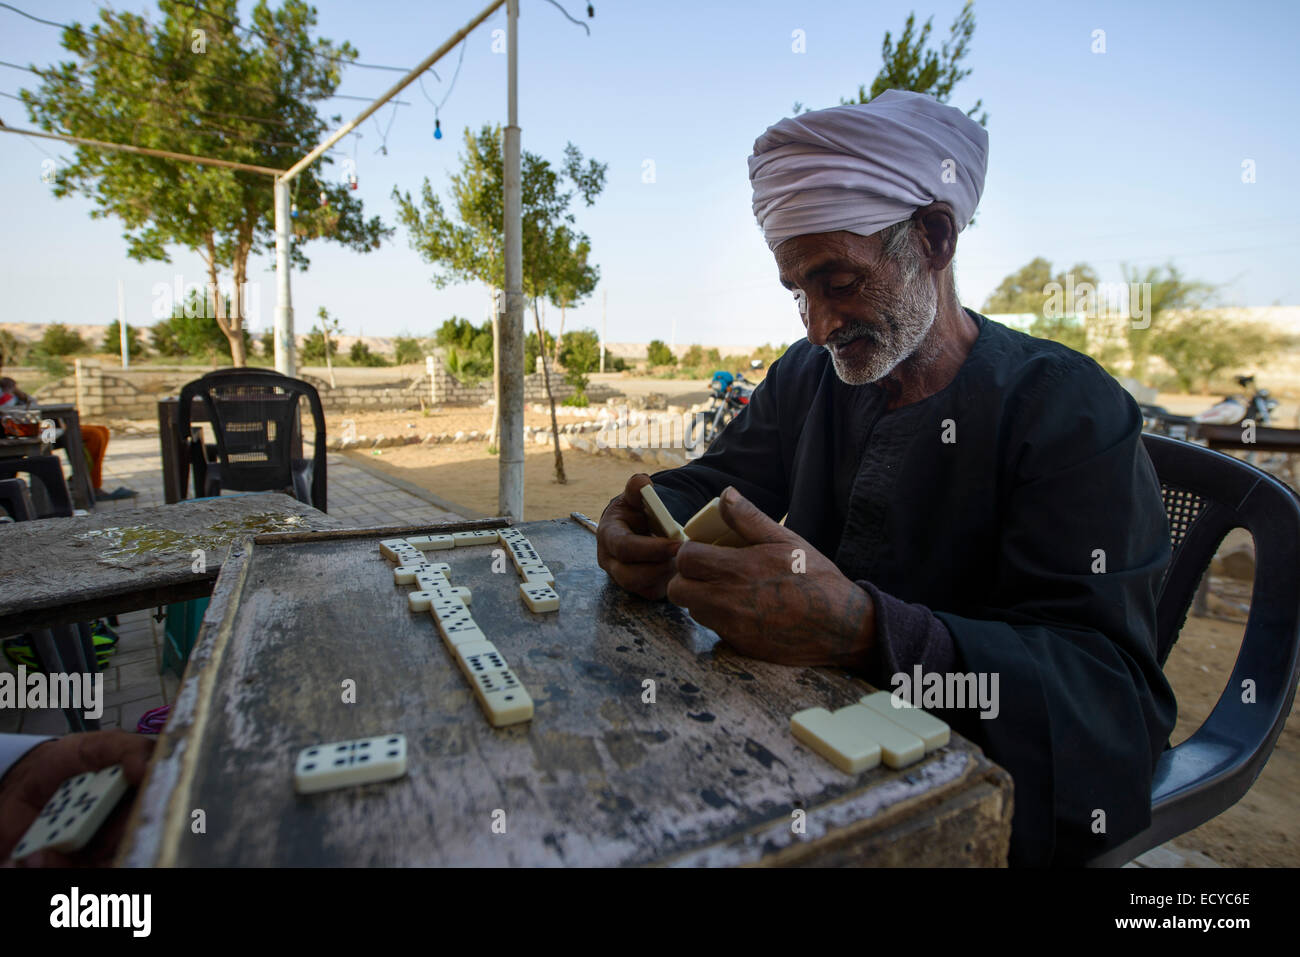 Männer spielen Domino in einer Oase, Ägypten Foto Stock